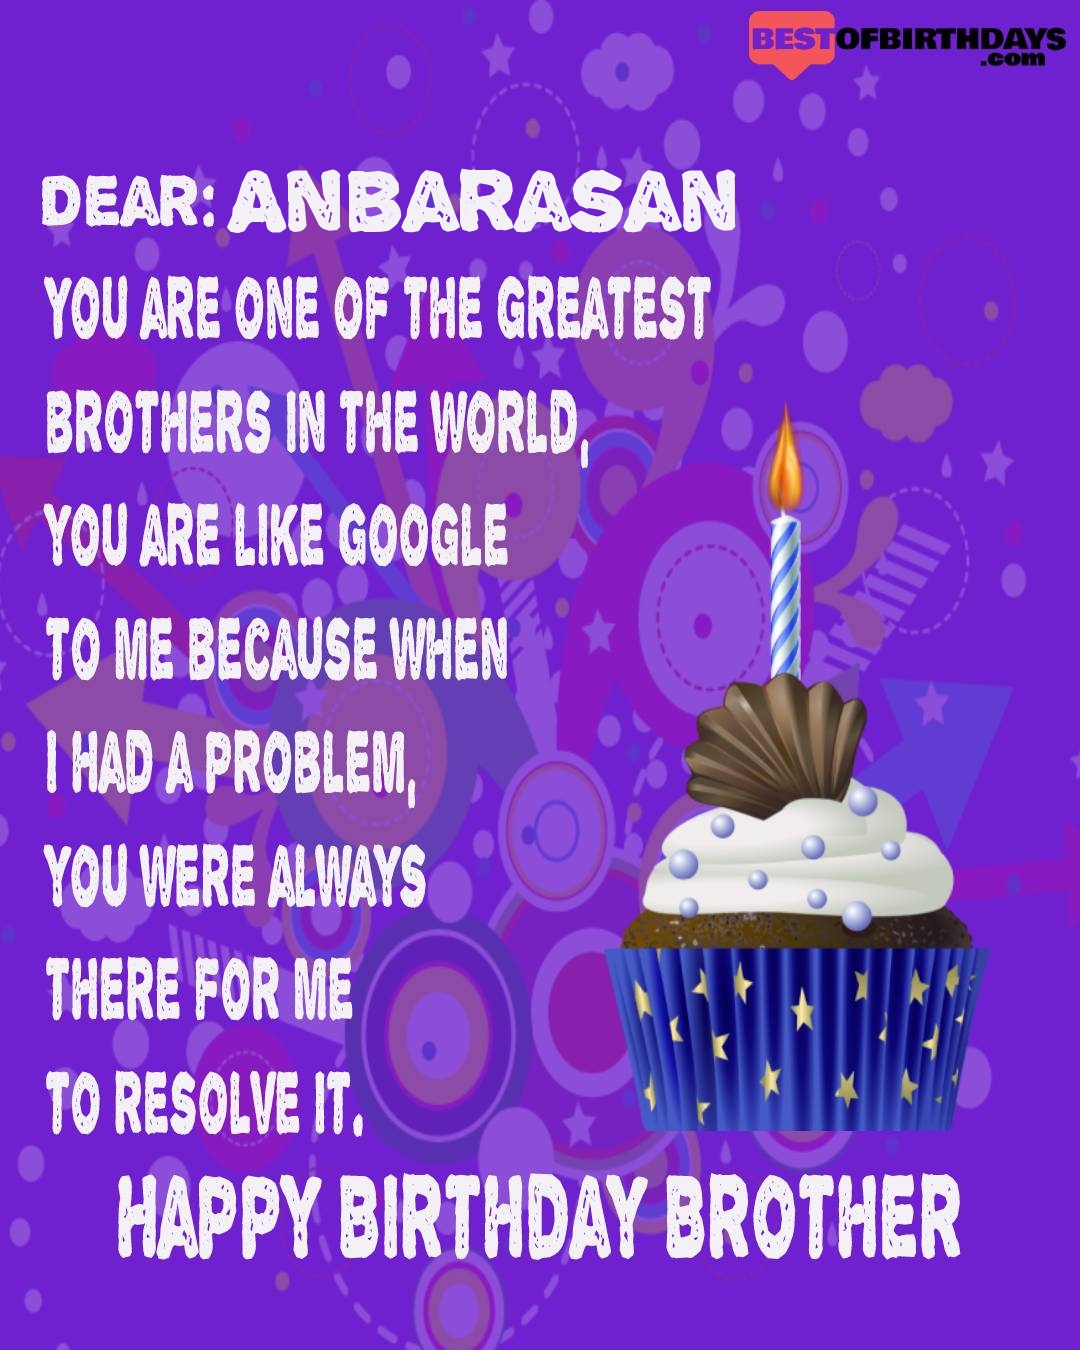 Happy birthday anbarasan bhai brother bro